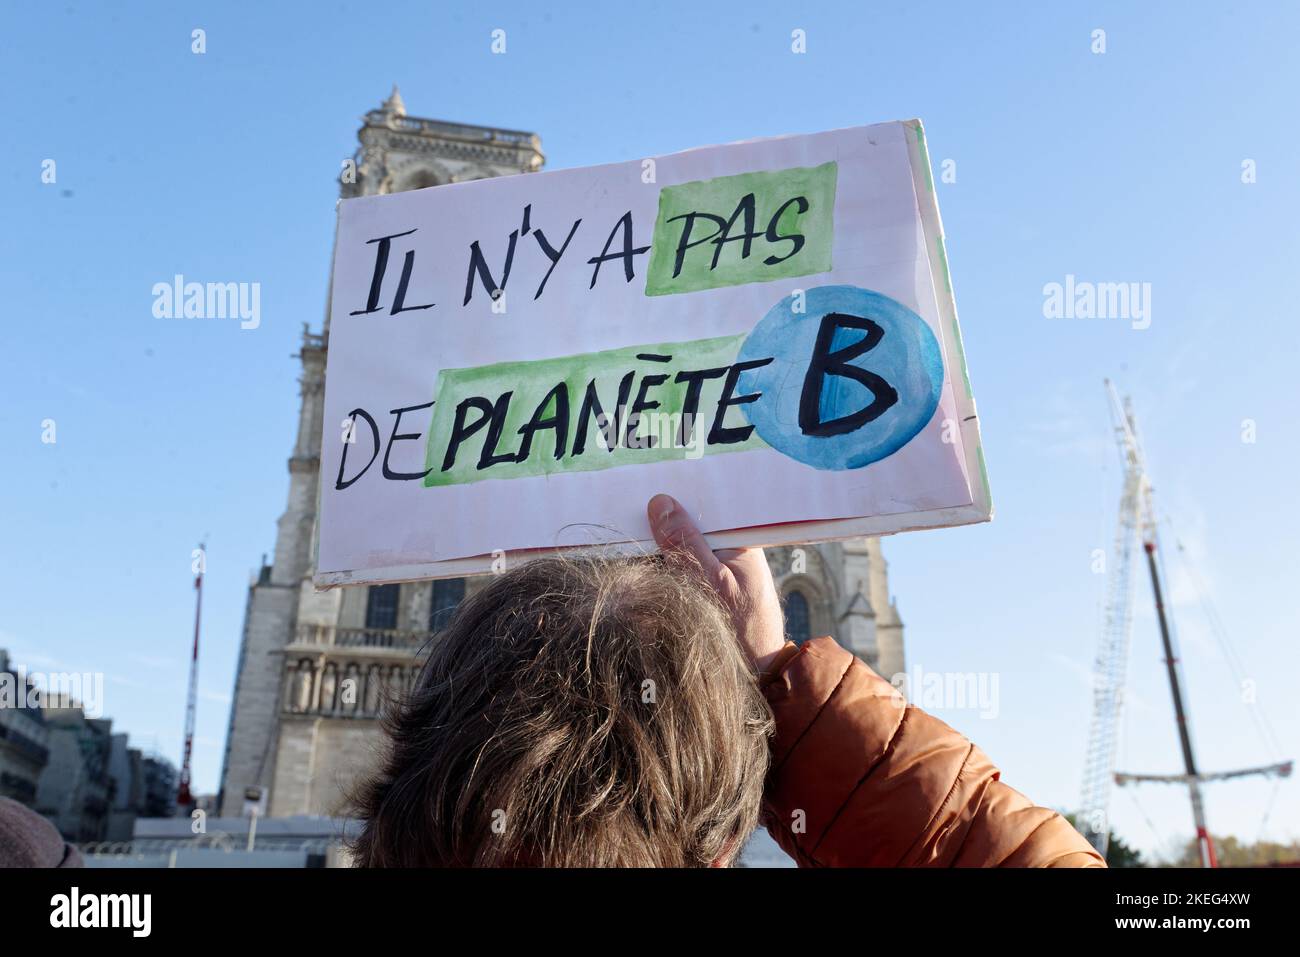 rassemblement lors de la journée mondiale pour le climat devant la cathédrale Notre dame de Paris à l'appel de plusieurs associations écologiste Stock Photo